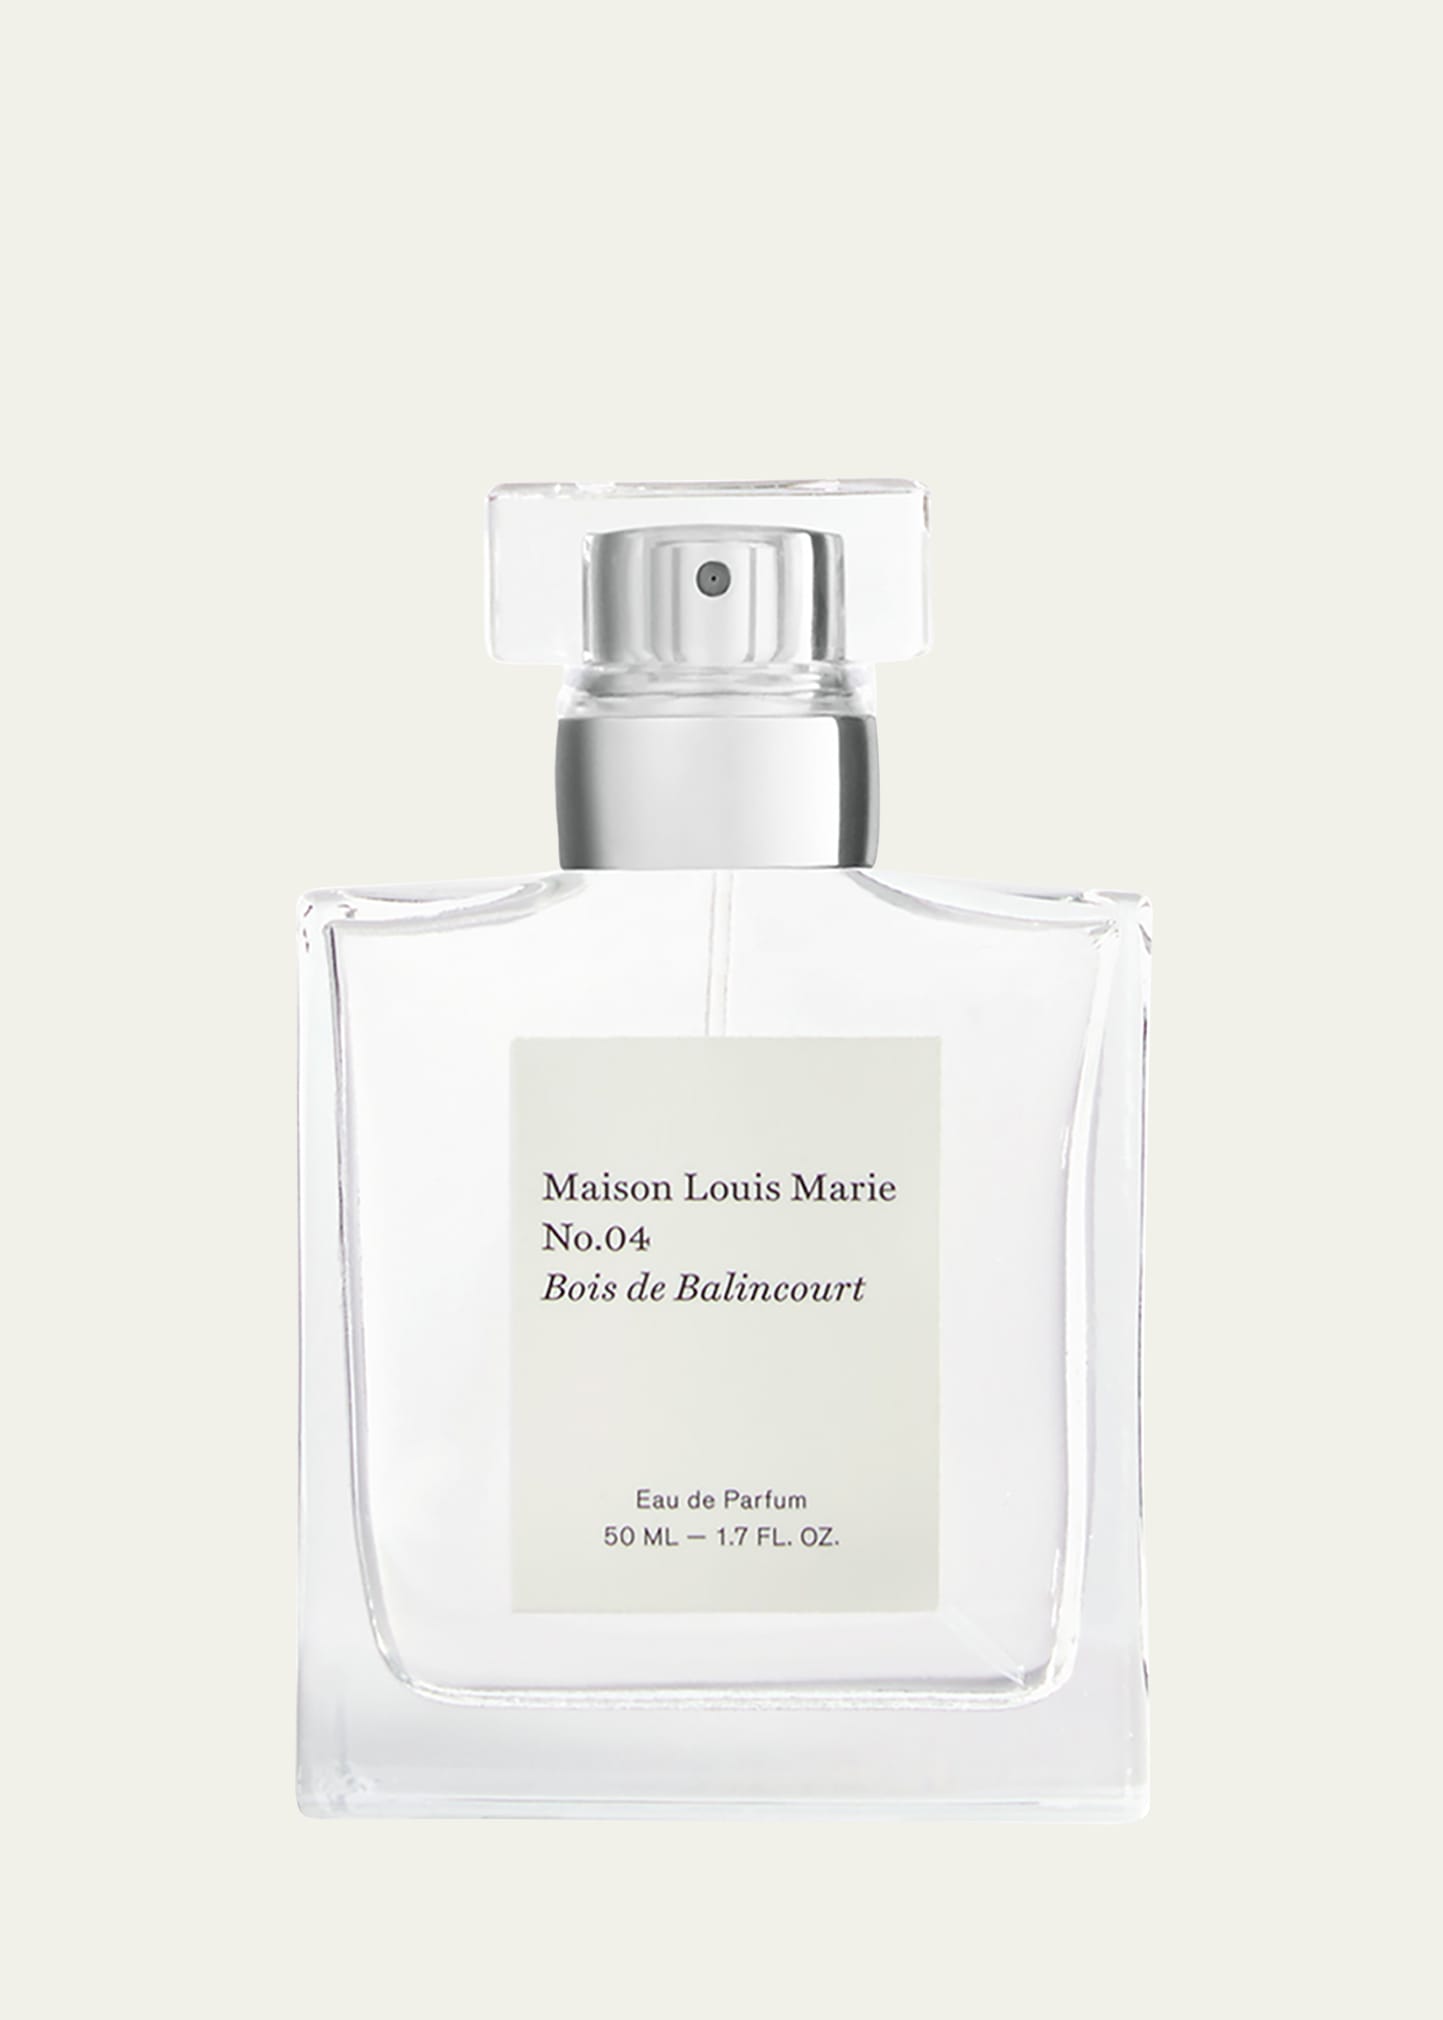 Maison Louis Marie 1.7 oz. No.04 Bois de Balincourt Eau de Parfum